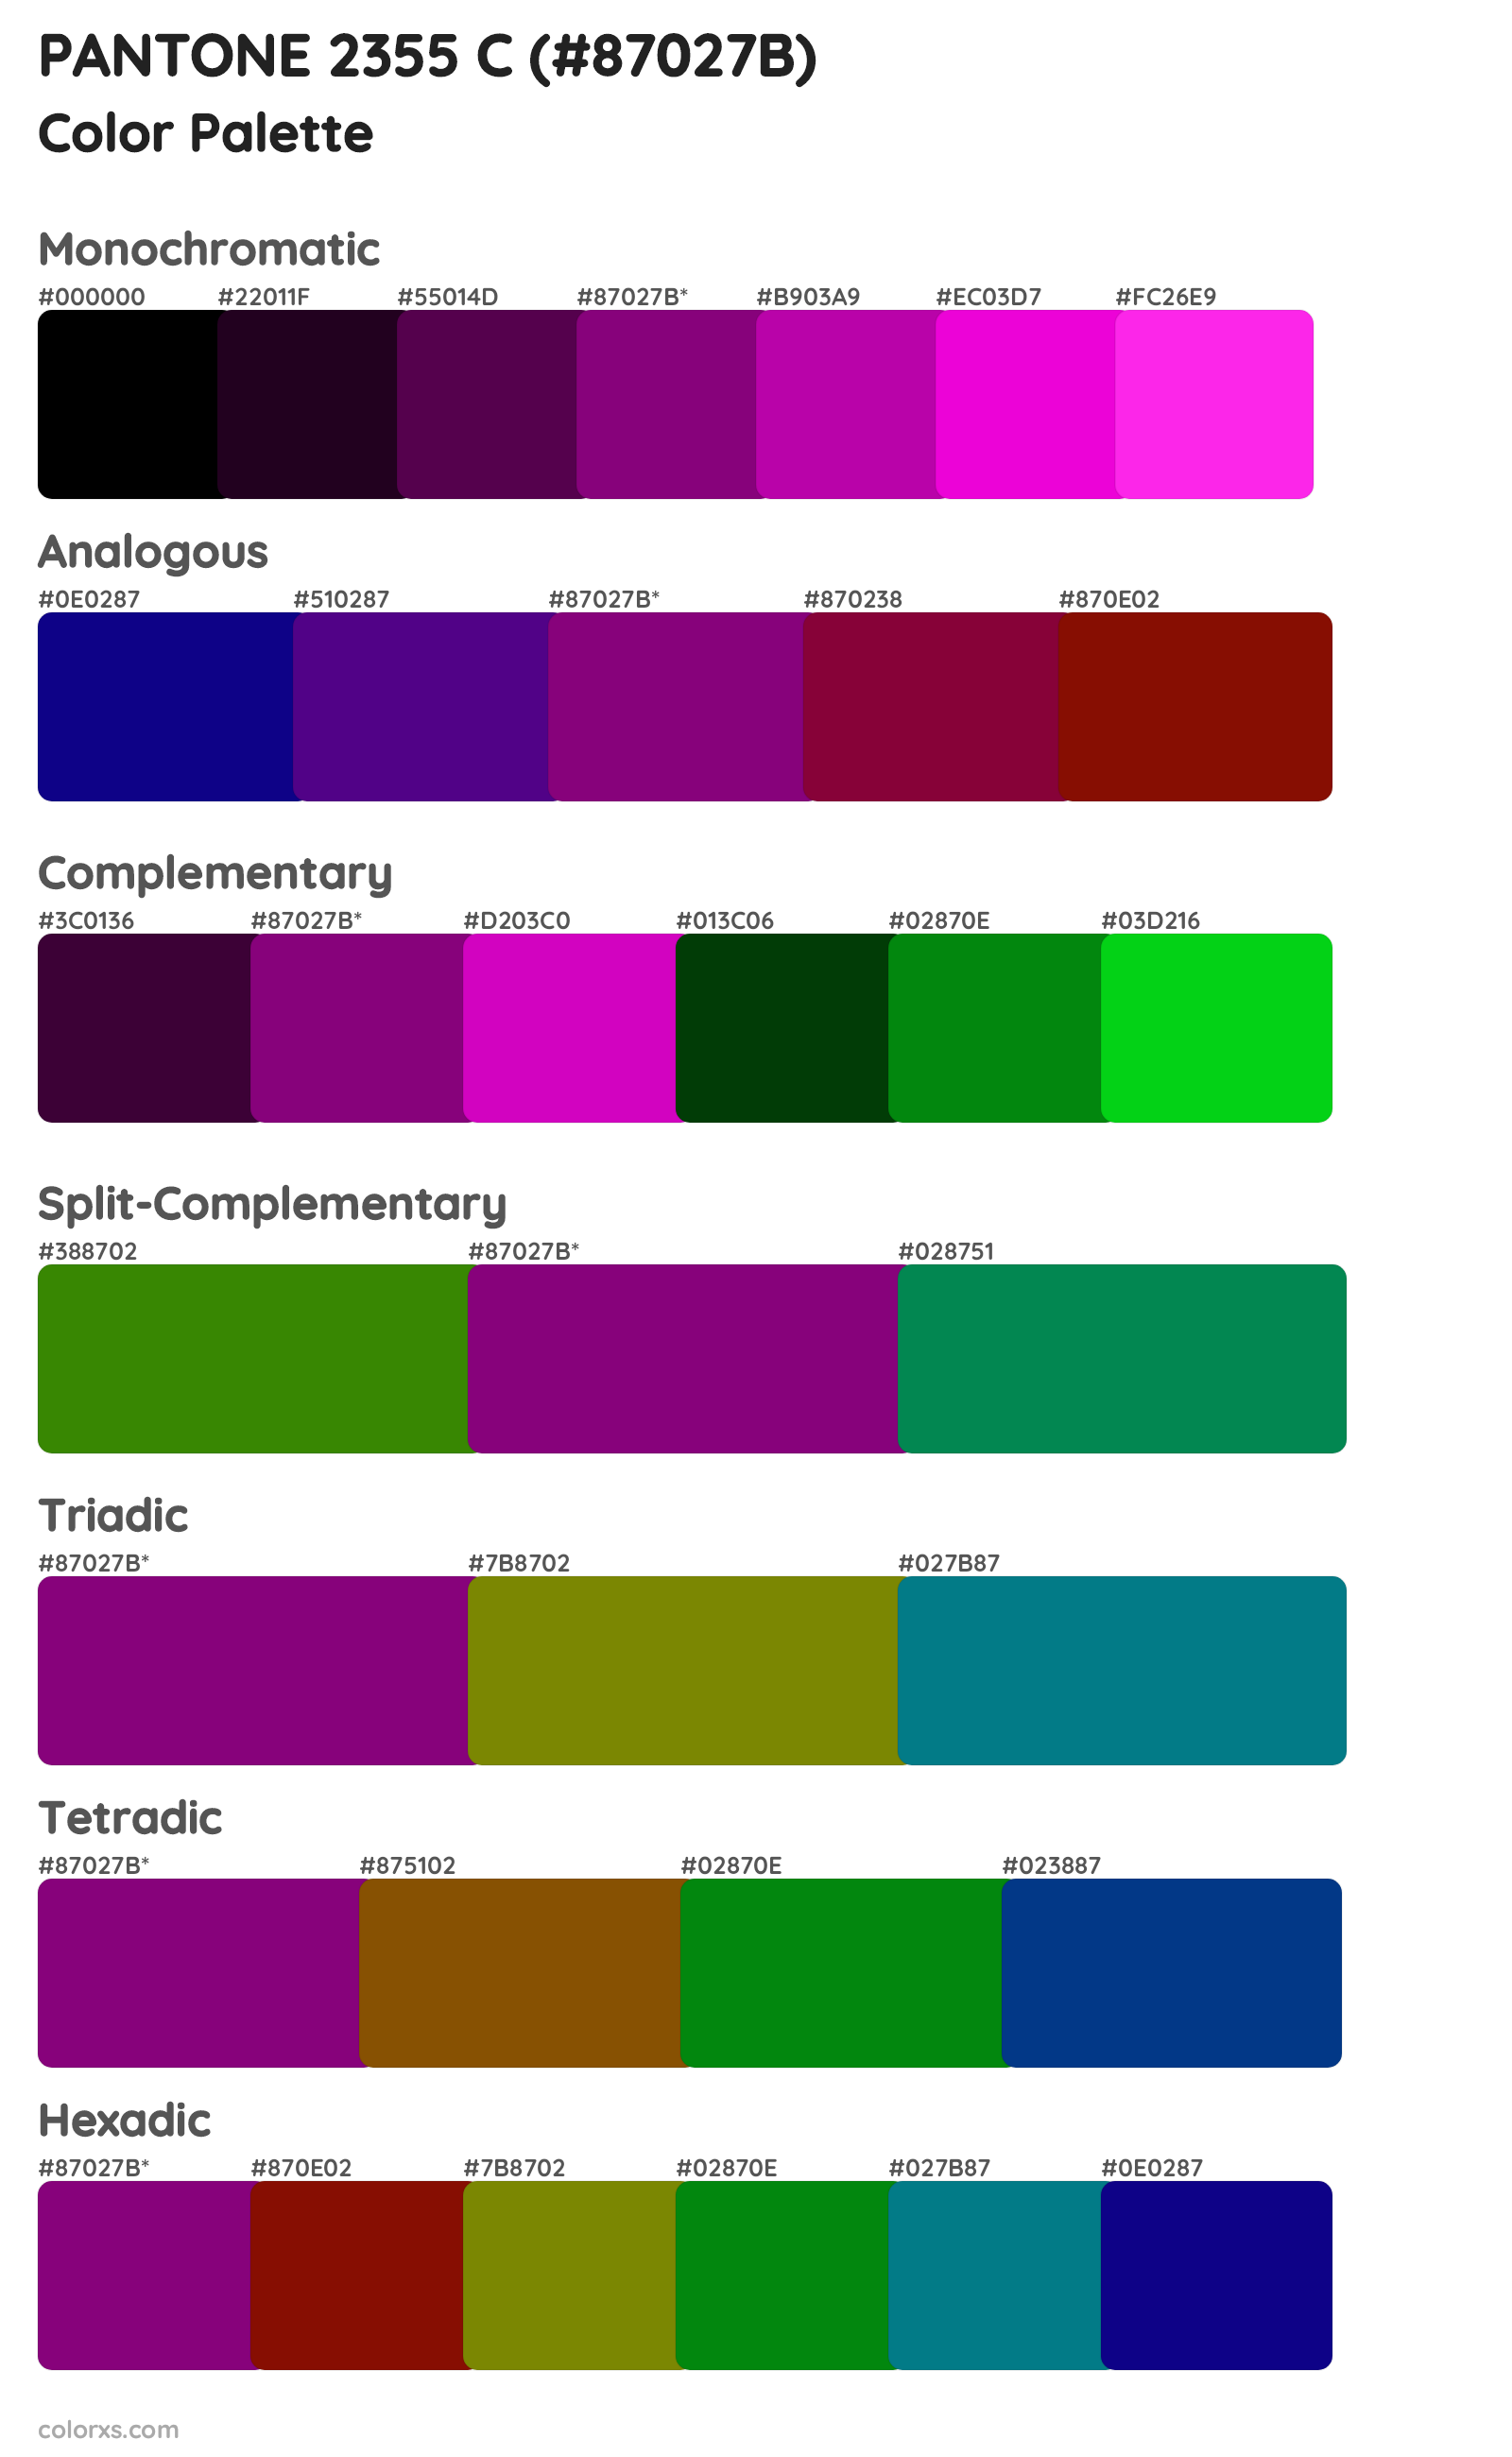 PANTONE 2355 C Color Scheme Palettes